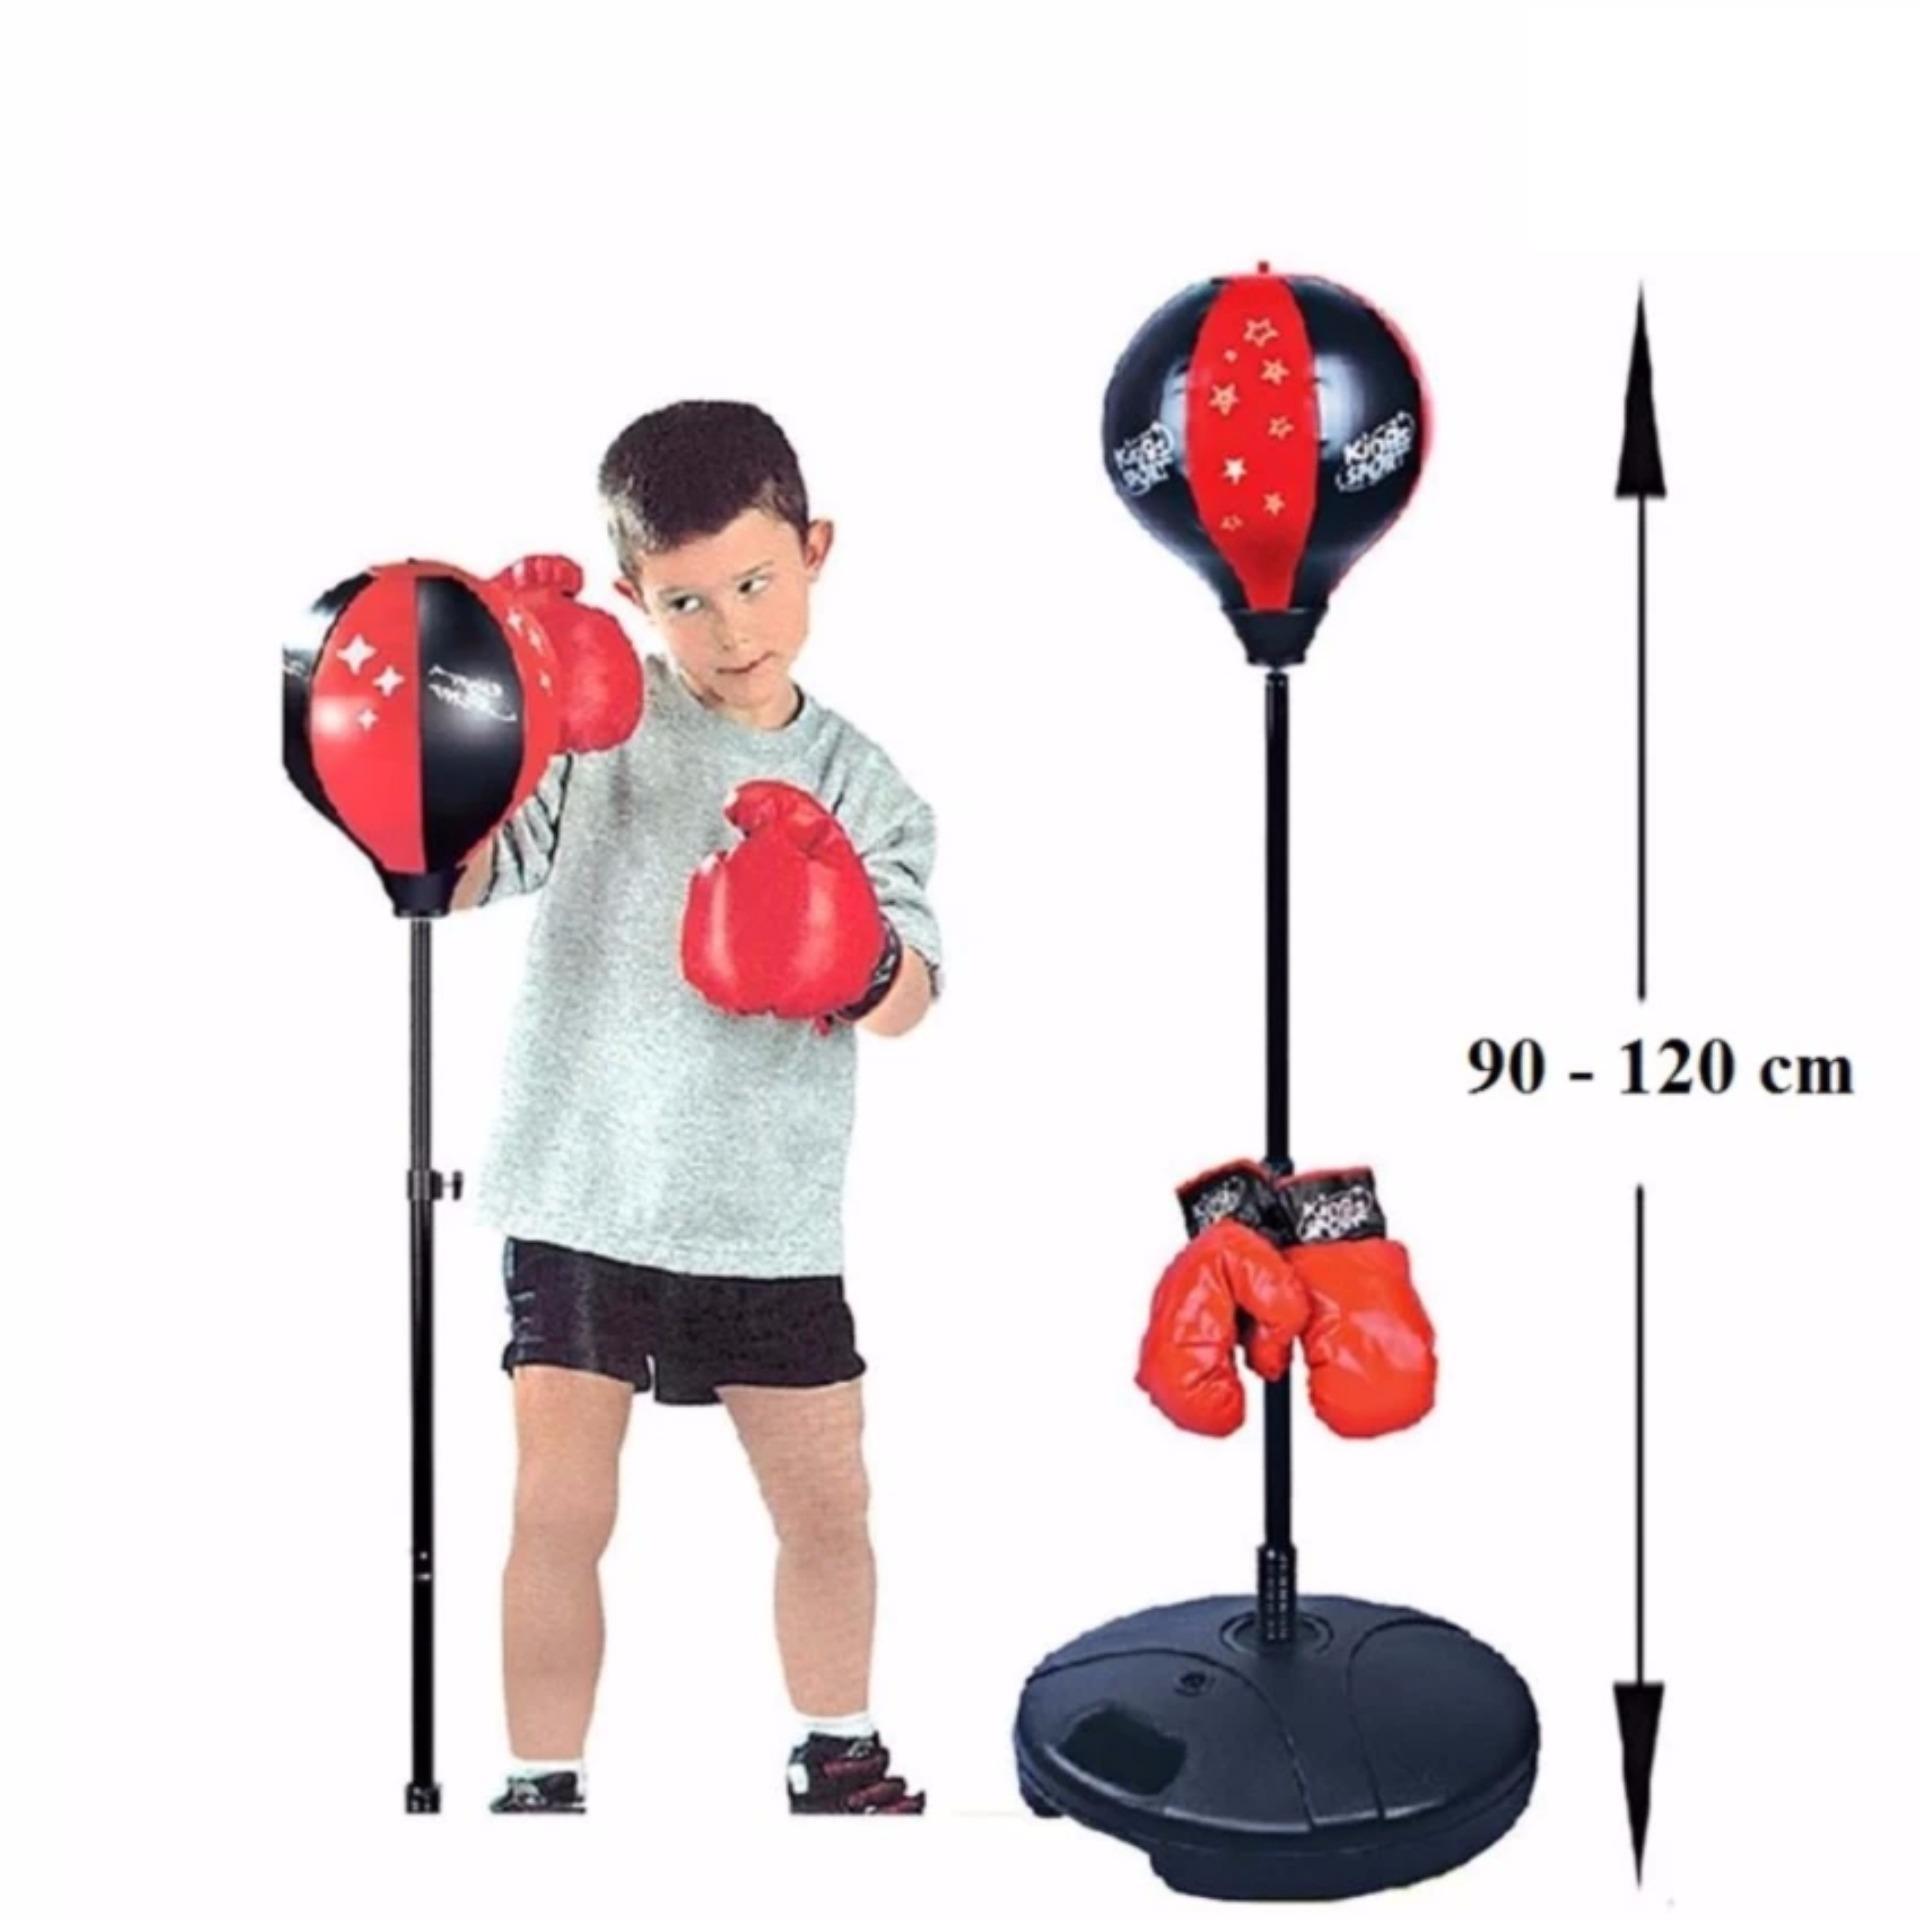 Bộ đồ tập đấm bốc boxing chuyên nghiệp cho trẻ em - Hàng Chất Lượng